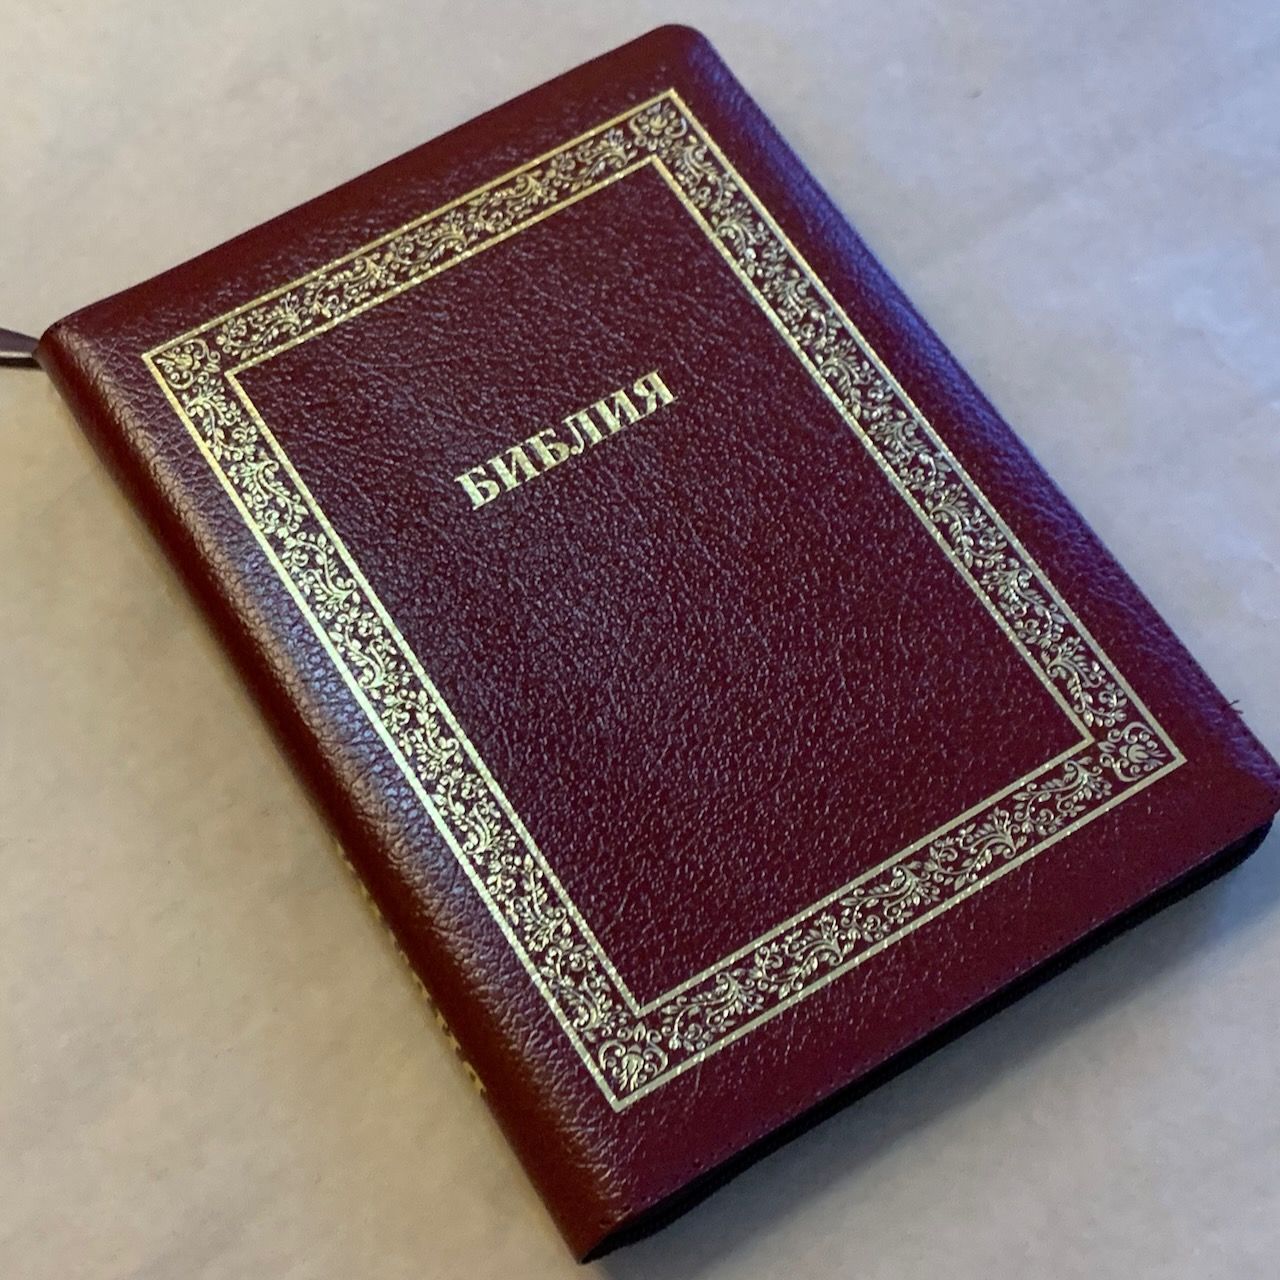 Библия 076zti код C10, дизайн "золотая рамка растительный орнамент", кожаный переплет на молнии с индексами, цвет бордо пятнистый металлик, размер 180x243 мм